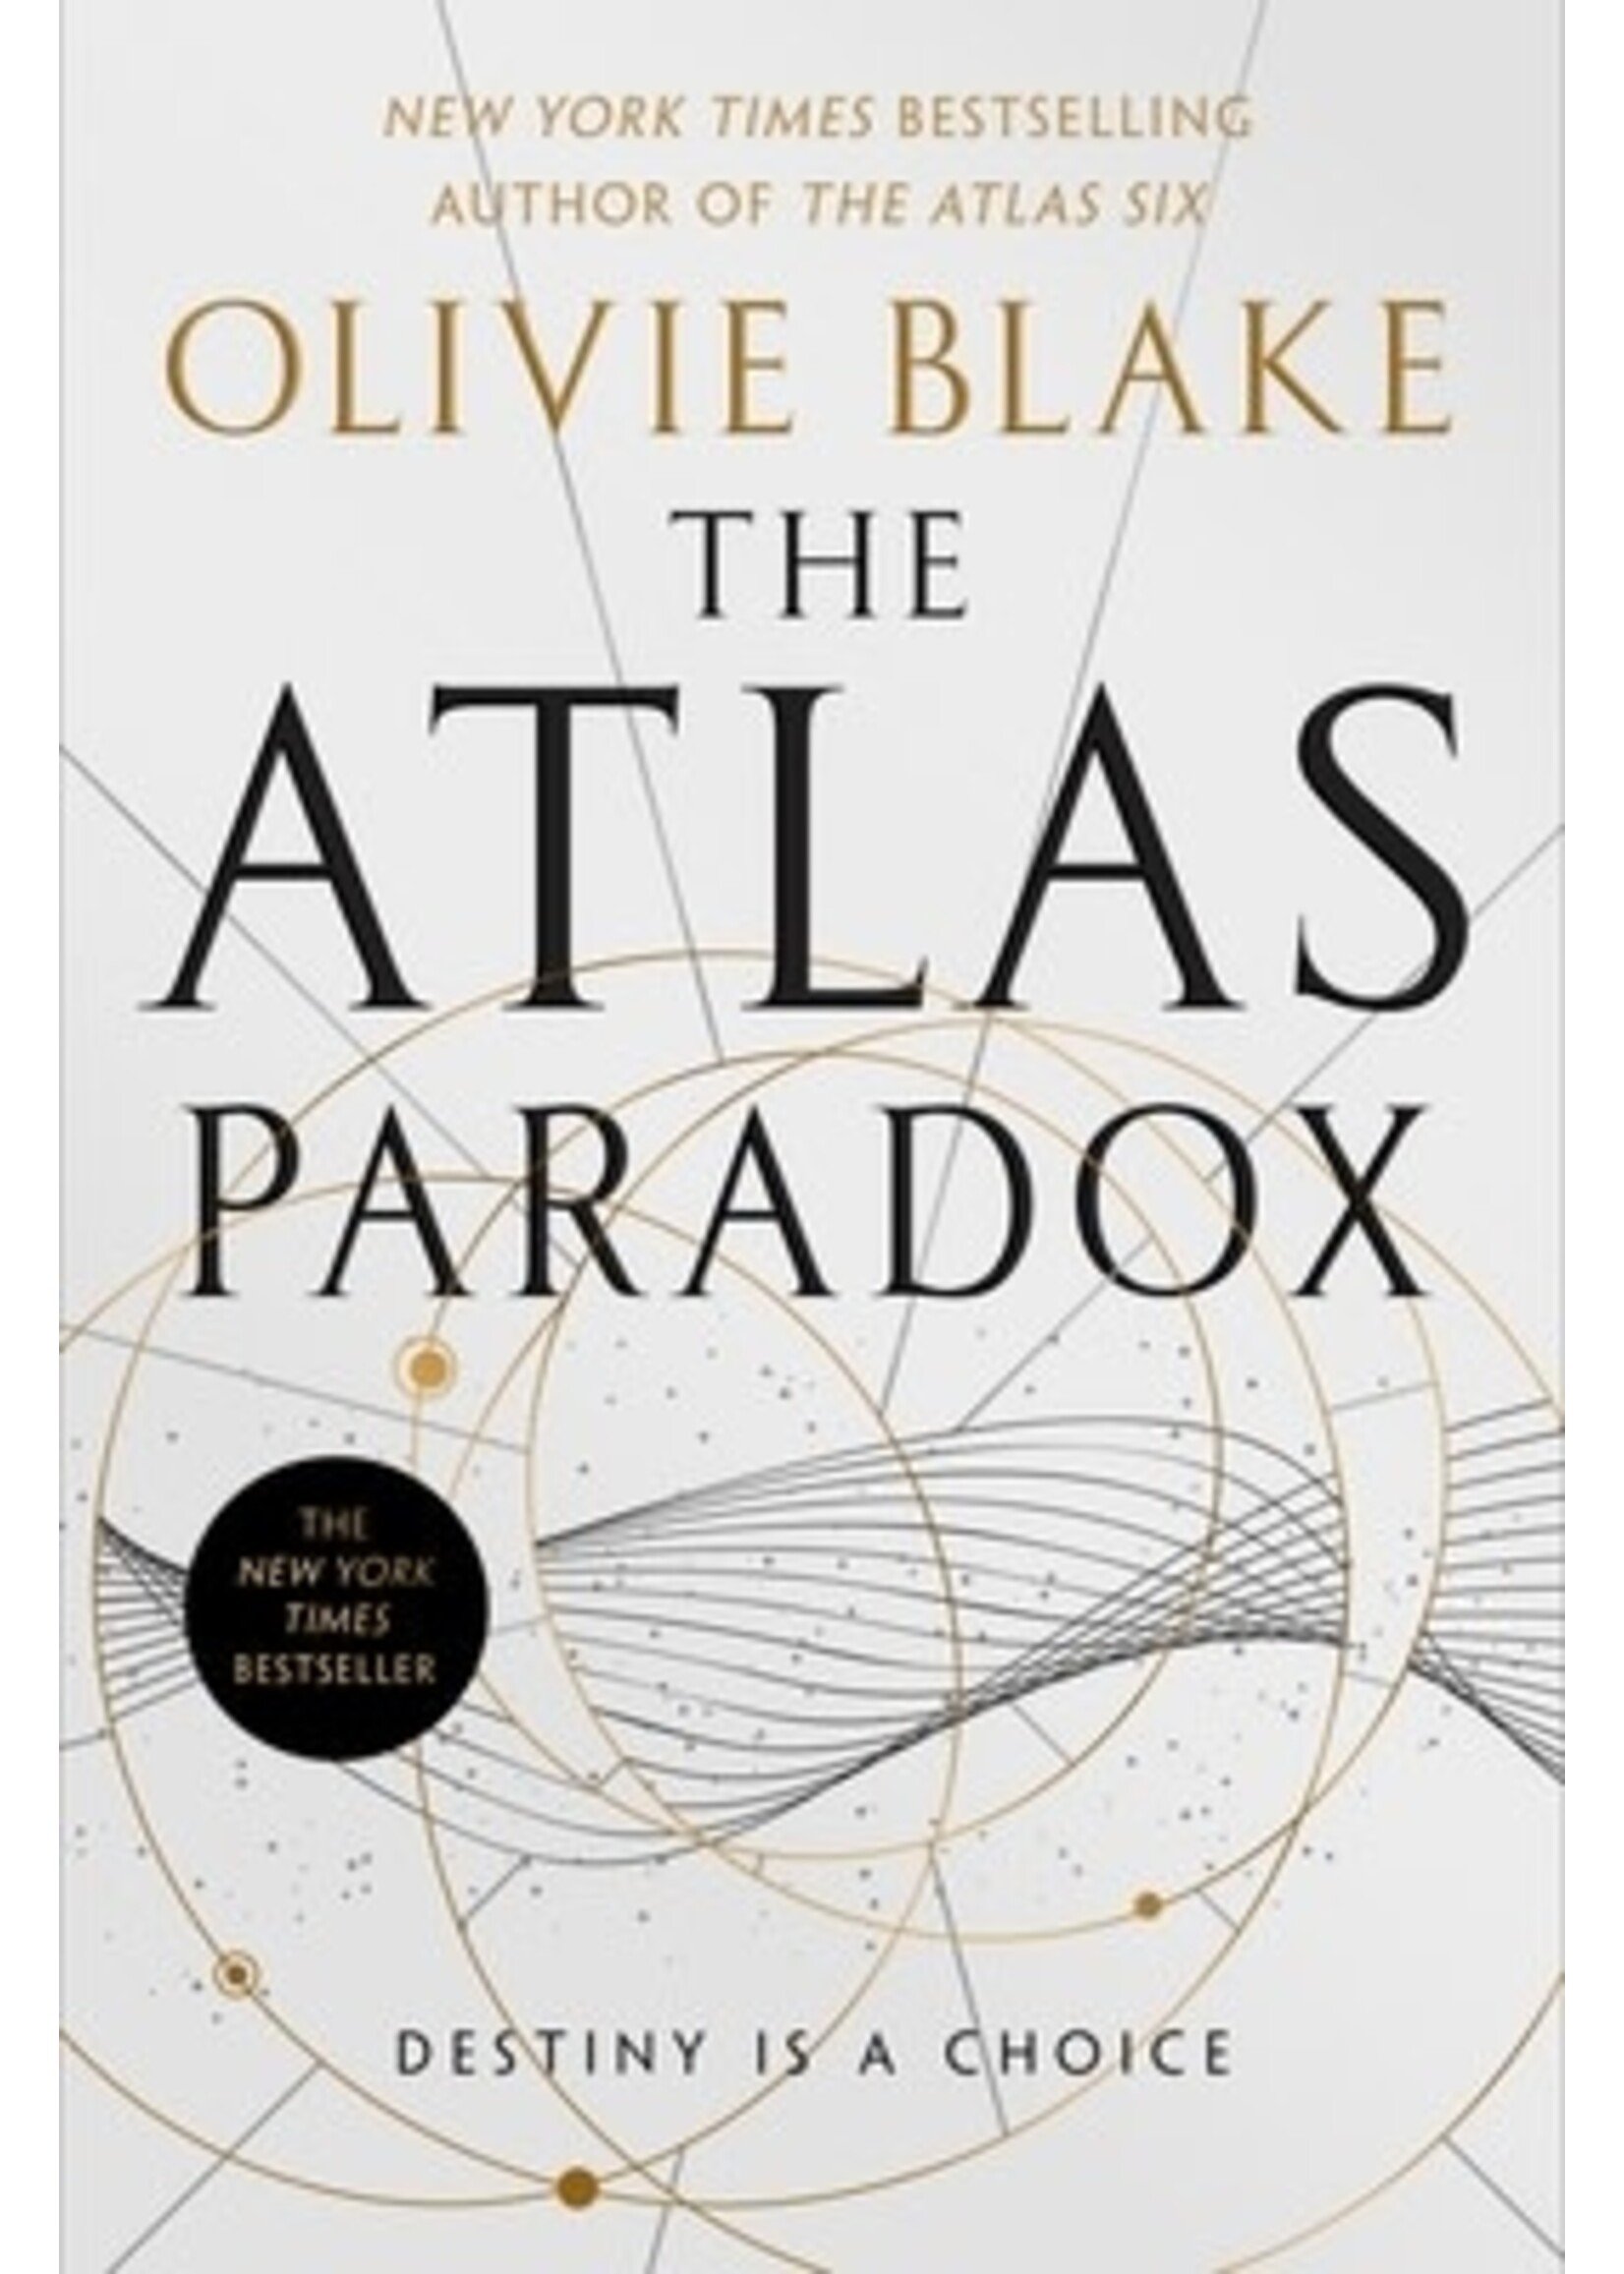 Atlas Paradox (The Atlas #2) by Olivie Blake